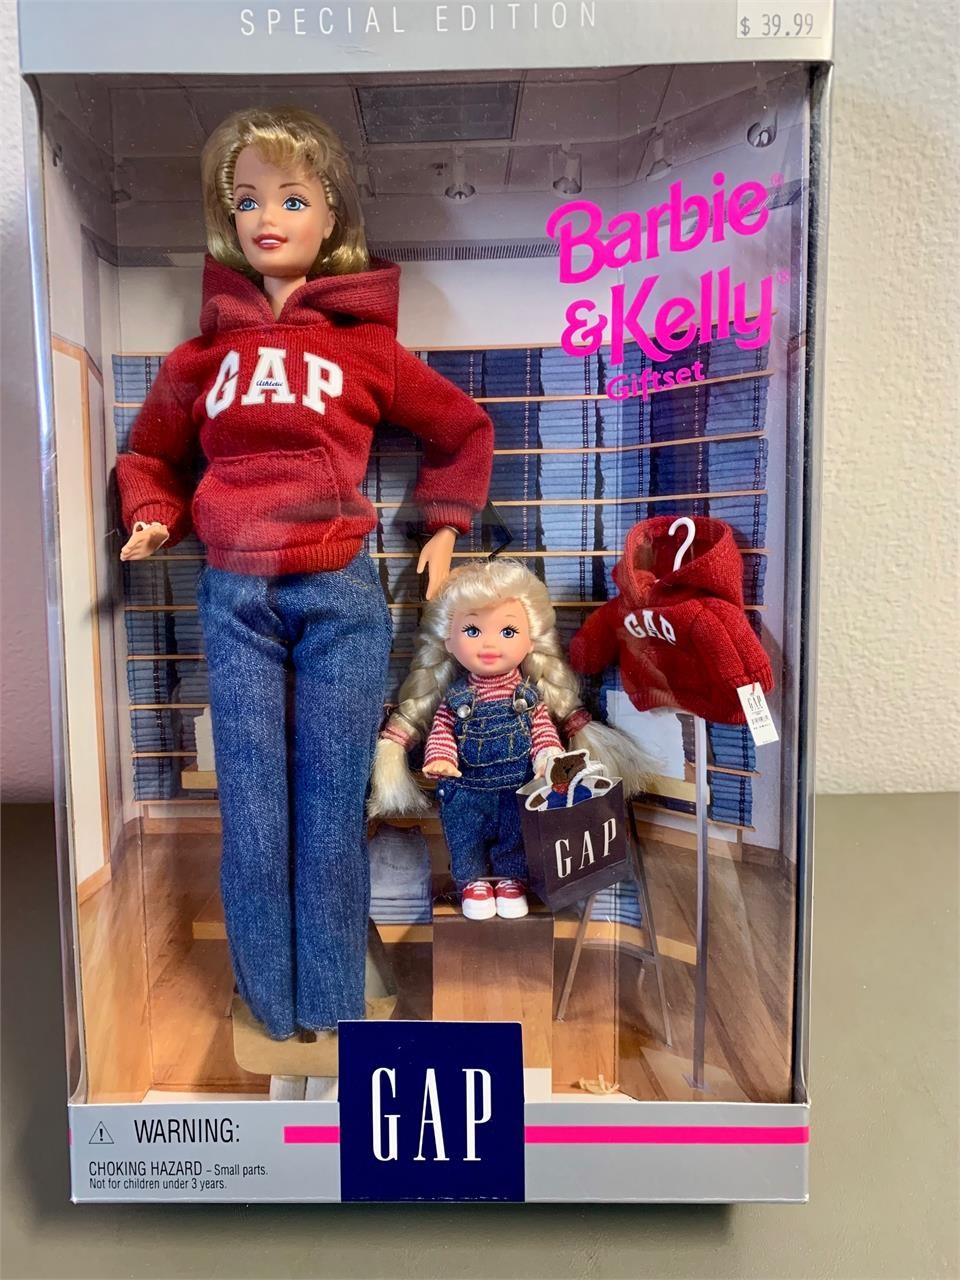 NIB The GAP Barbie & Kelly GiftSet Special Edition